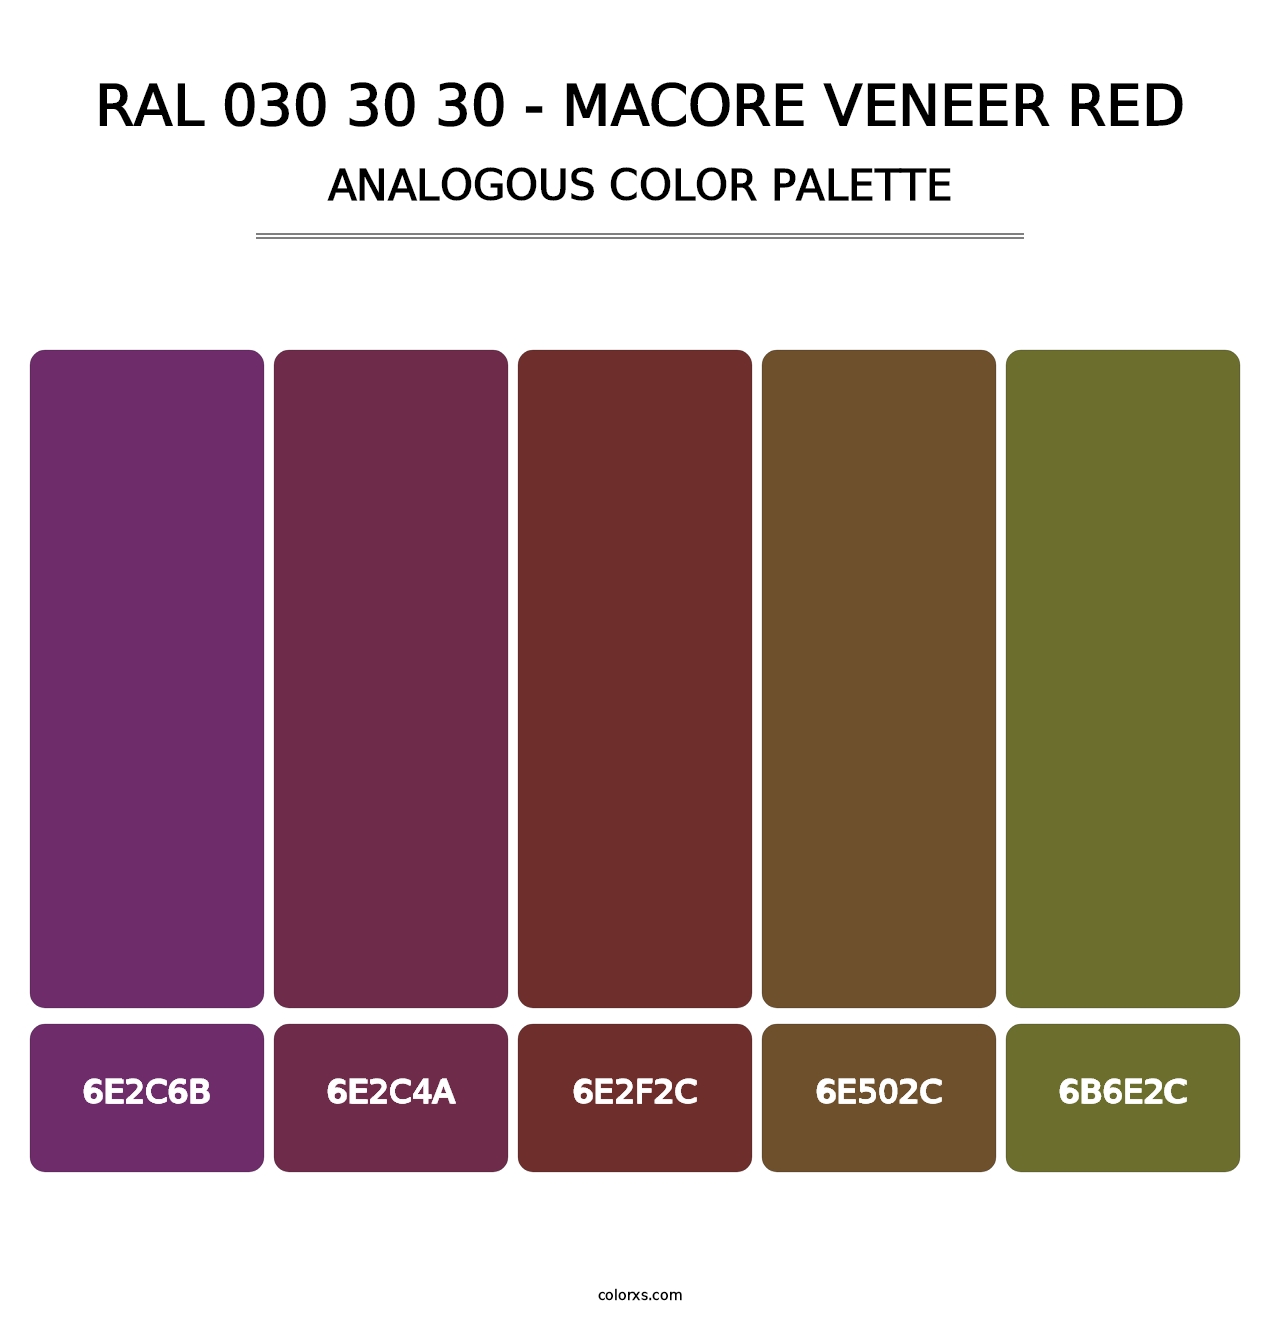 RAL 030 30 30 - Macore Veneer Red - Analogous Color Palette